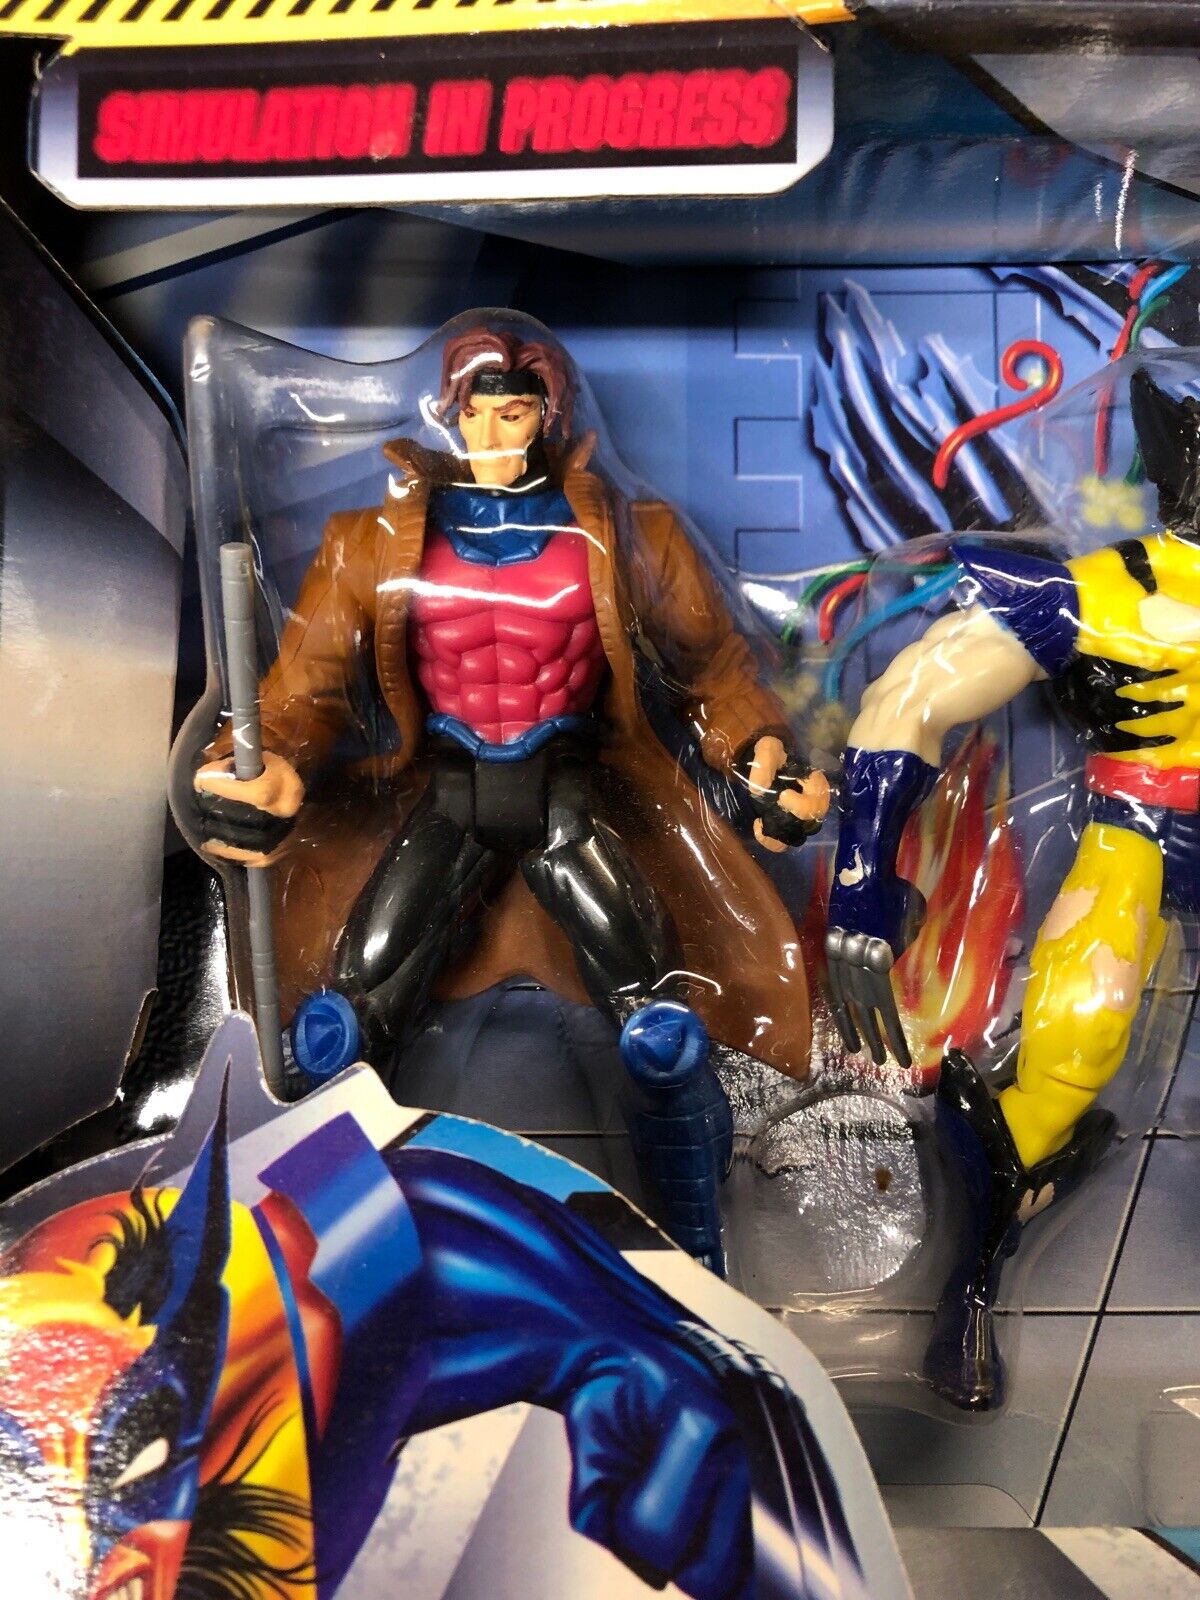 X-Men Danger Room Set Gambit Captive Sabretooth Nimrod Variant Wolverine MISB